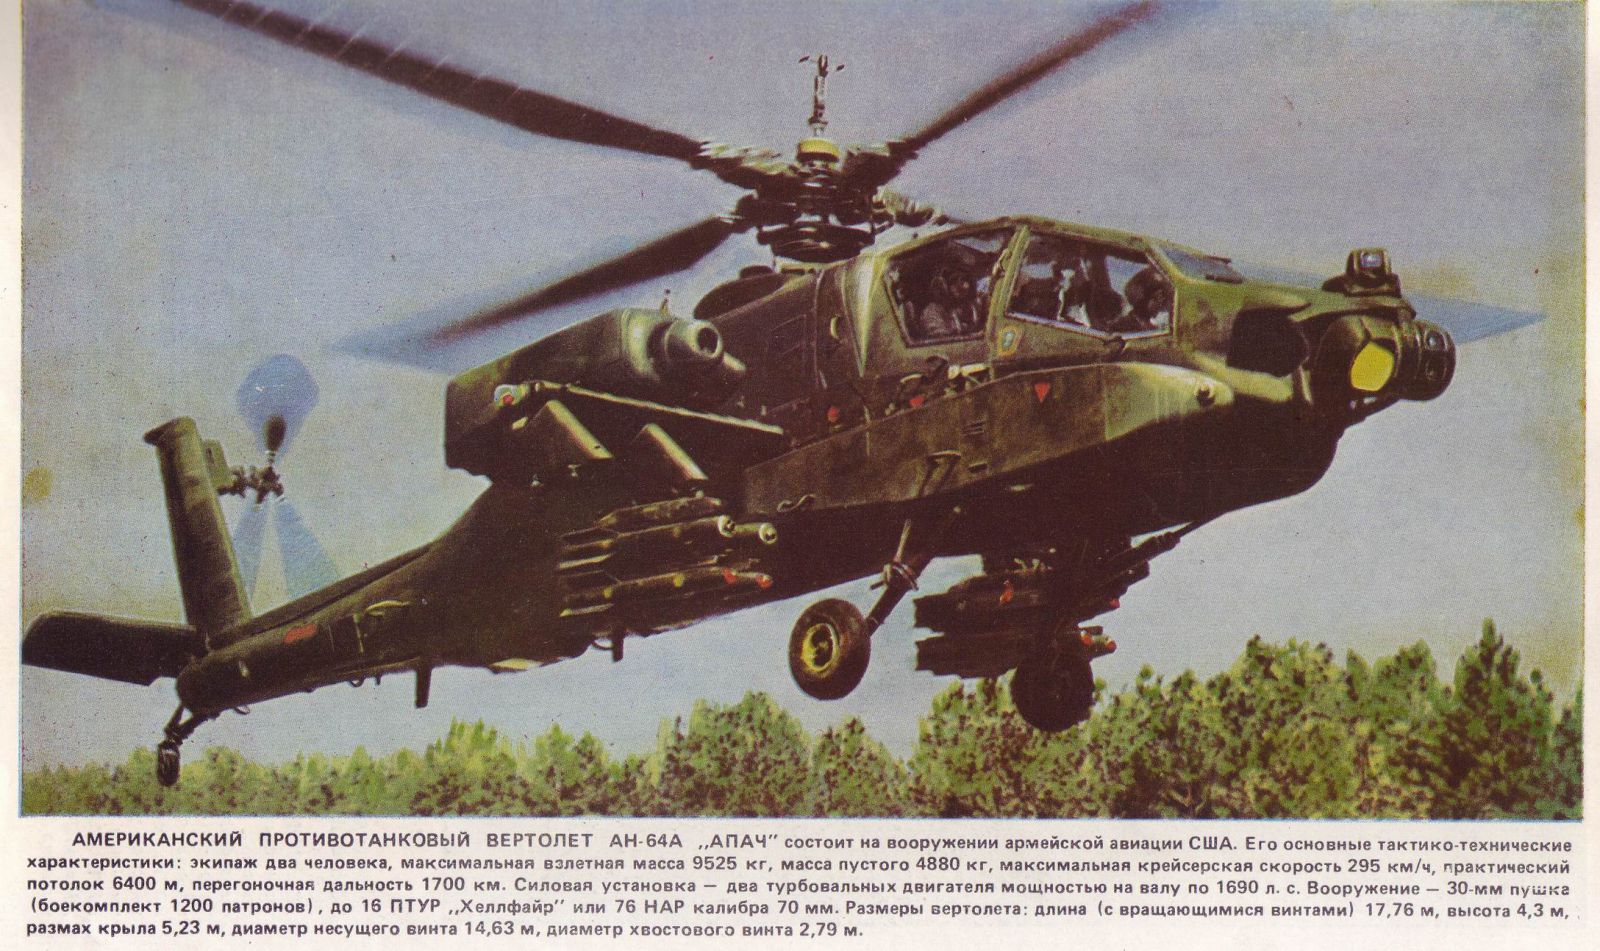 Особовий склад, людина до 19 000   120-мм самохідні міномети 54   Танки M1 «Абрамс» 232   Переносні ПЗРК «Джавелін» 208   БРМ М3 «Бредлі» 116   PCЗО MLRS 18   Ударні вертольоти AH-64D 48   Вертольоти бойового забезпечення UH-60 50   155-мм самохідні гаубиці 64   Транспортні вертольоти CH-47D 12   БЛА 64